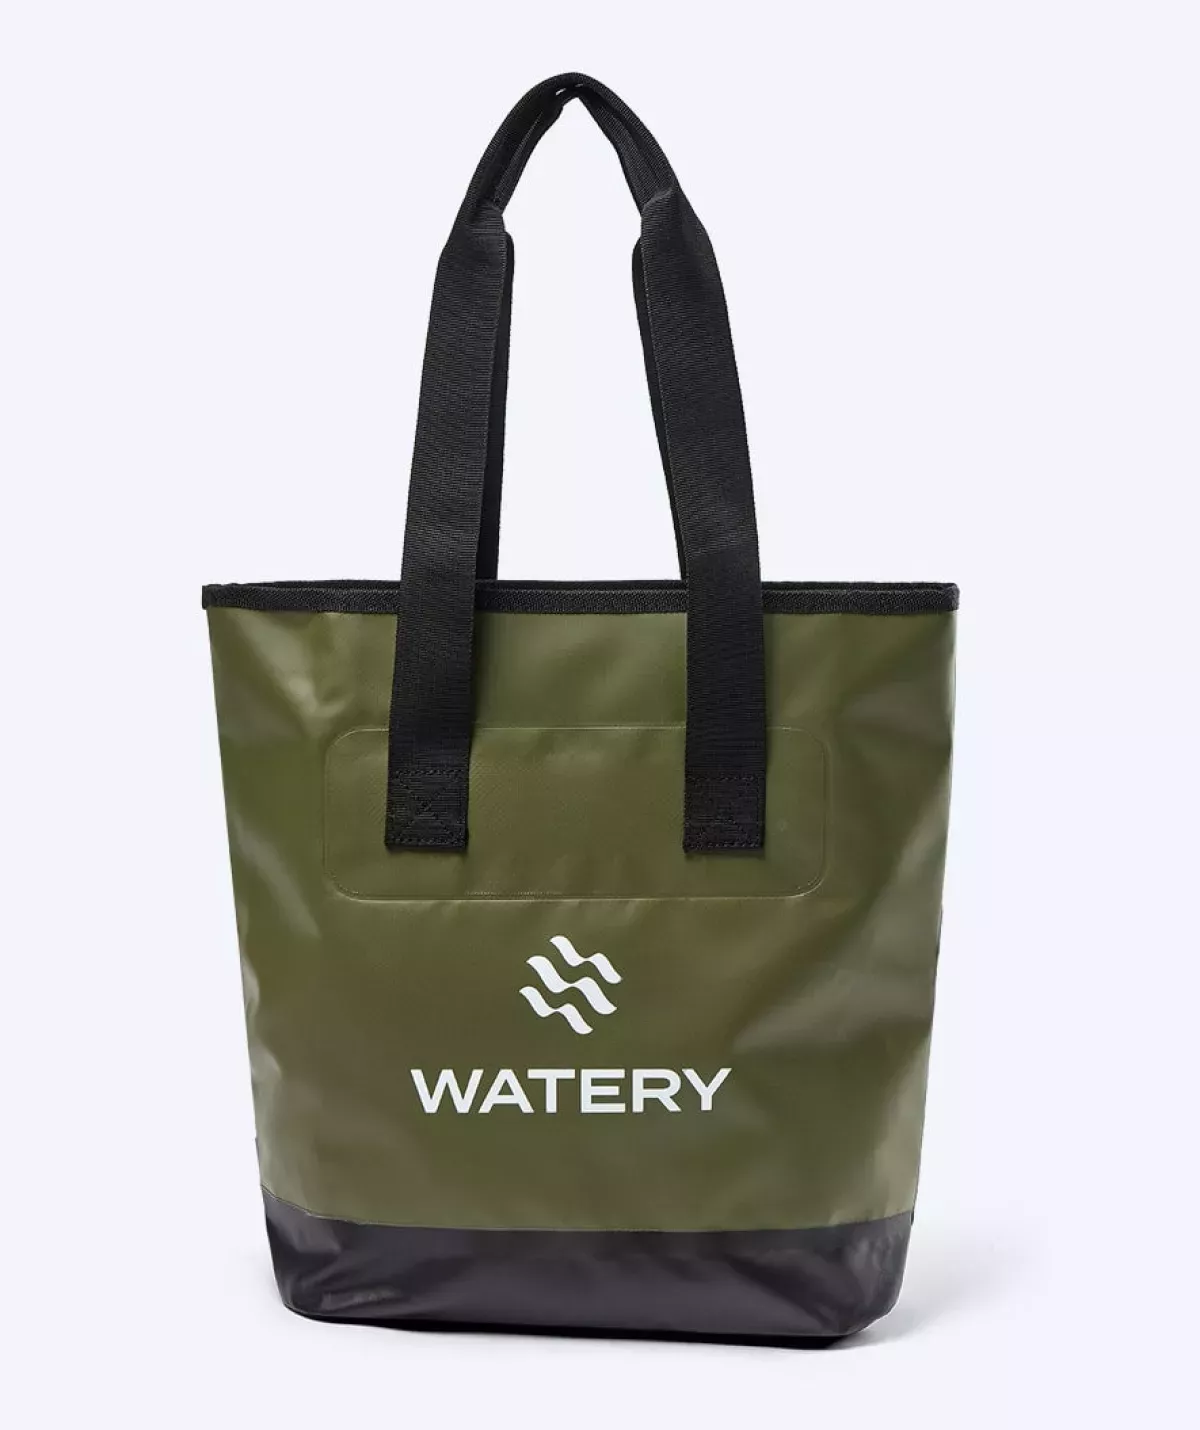 #1 - Watery vandtæt strandtaske - Laiken - Grøn